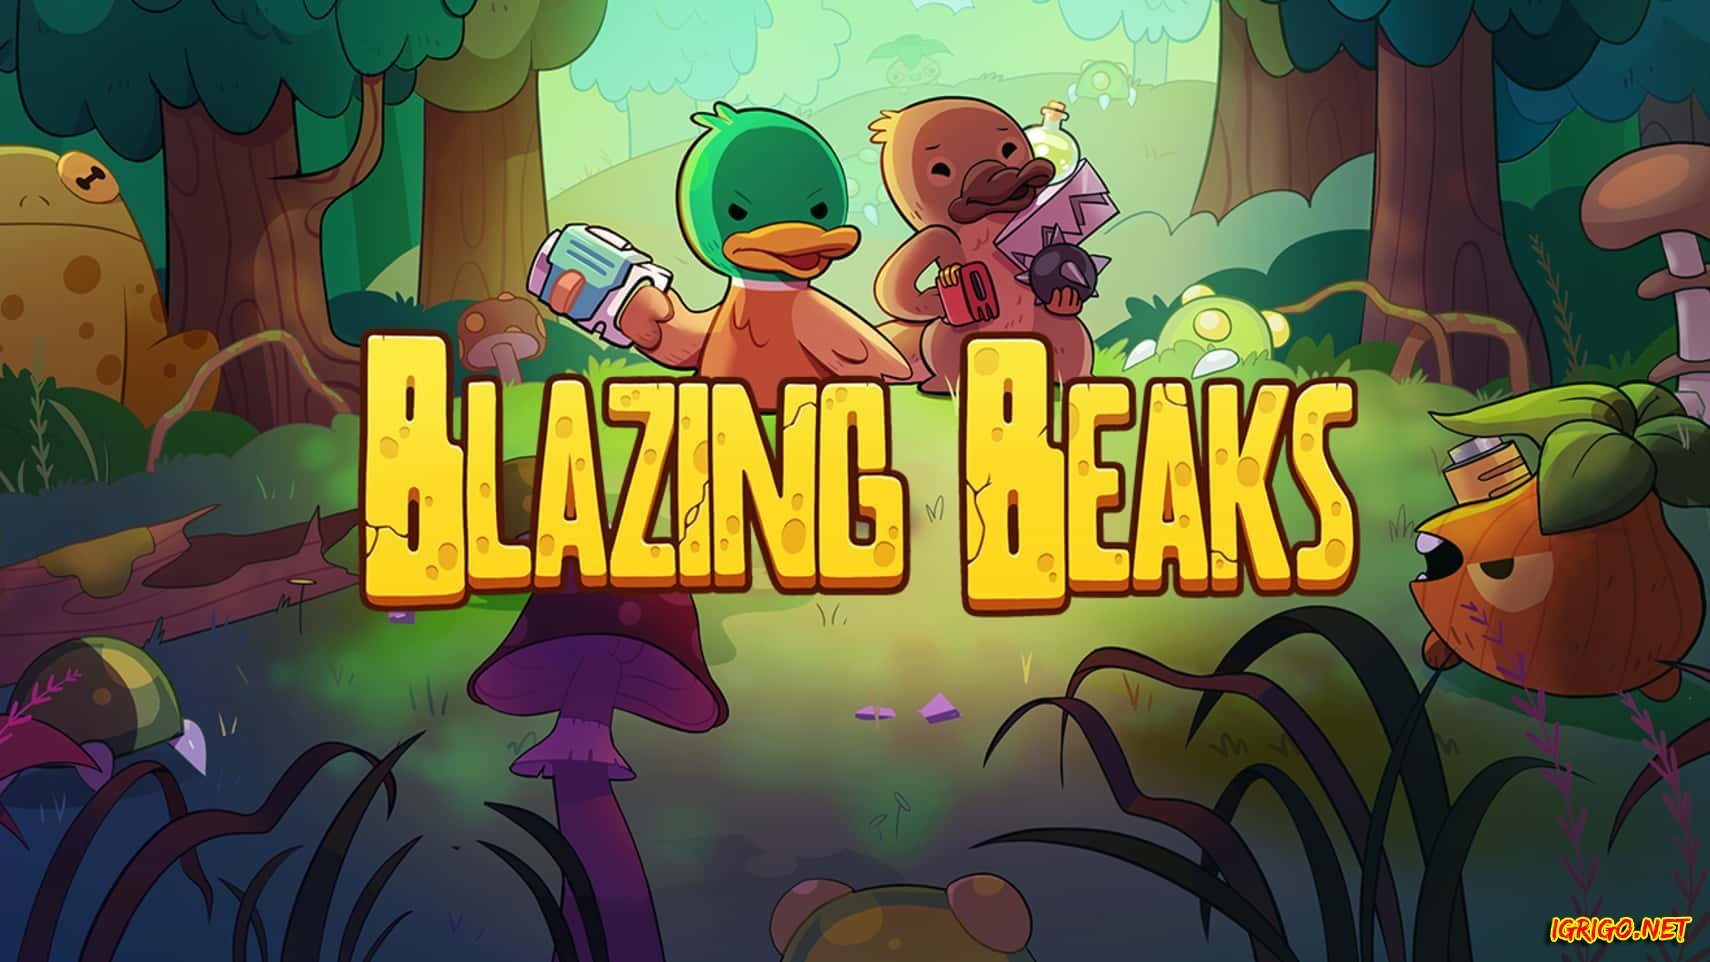 Adventure beaks. Blazing beaks. Blazing beaks Утконос. Blazing beaks арты. Blazing beaks game.